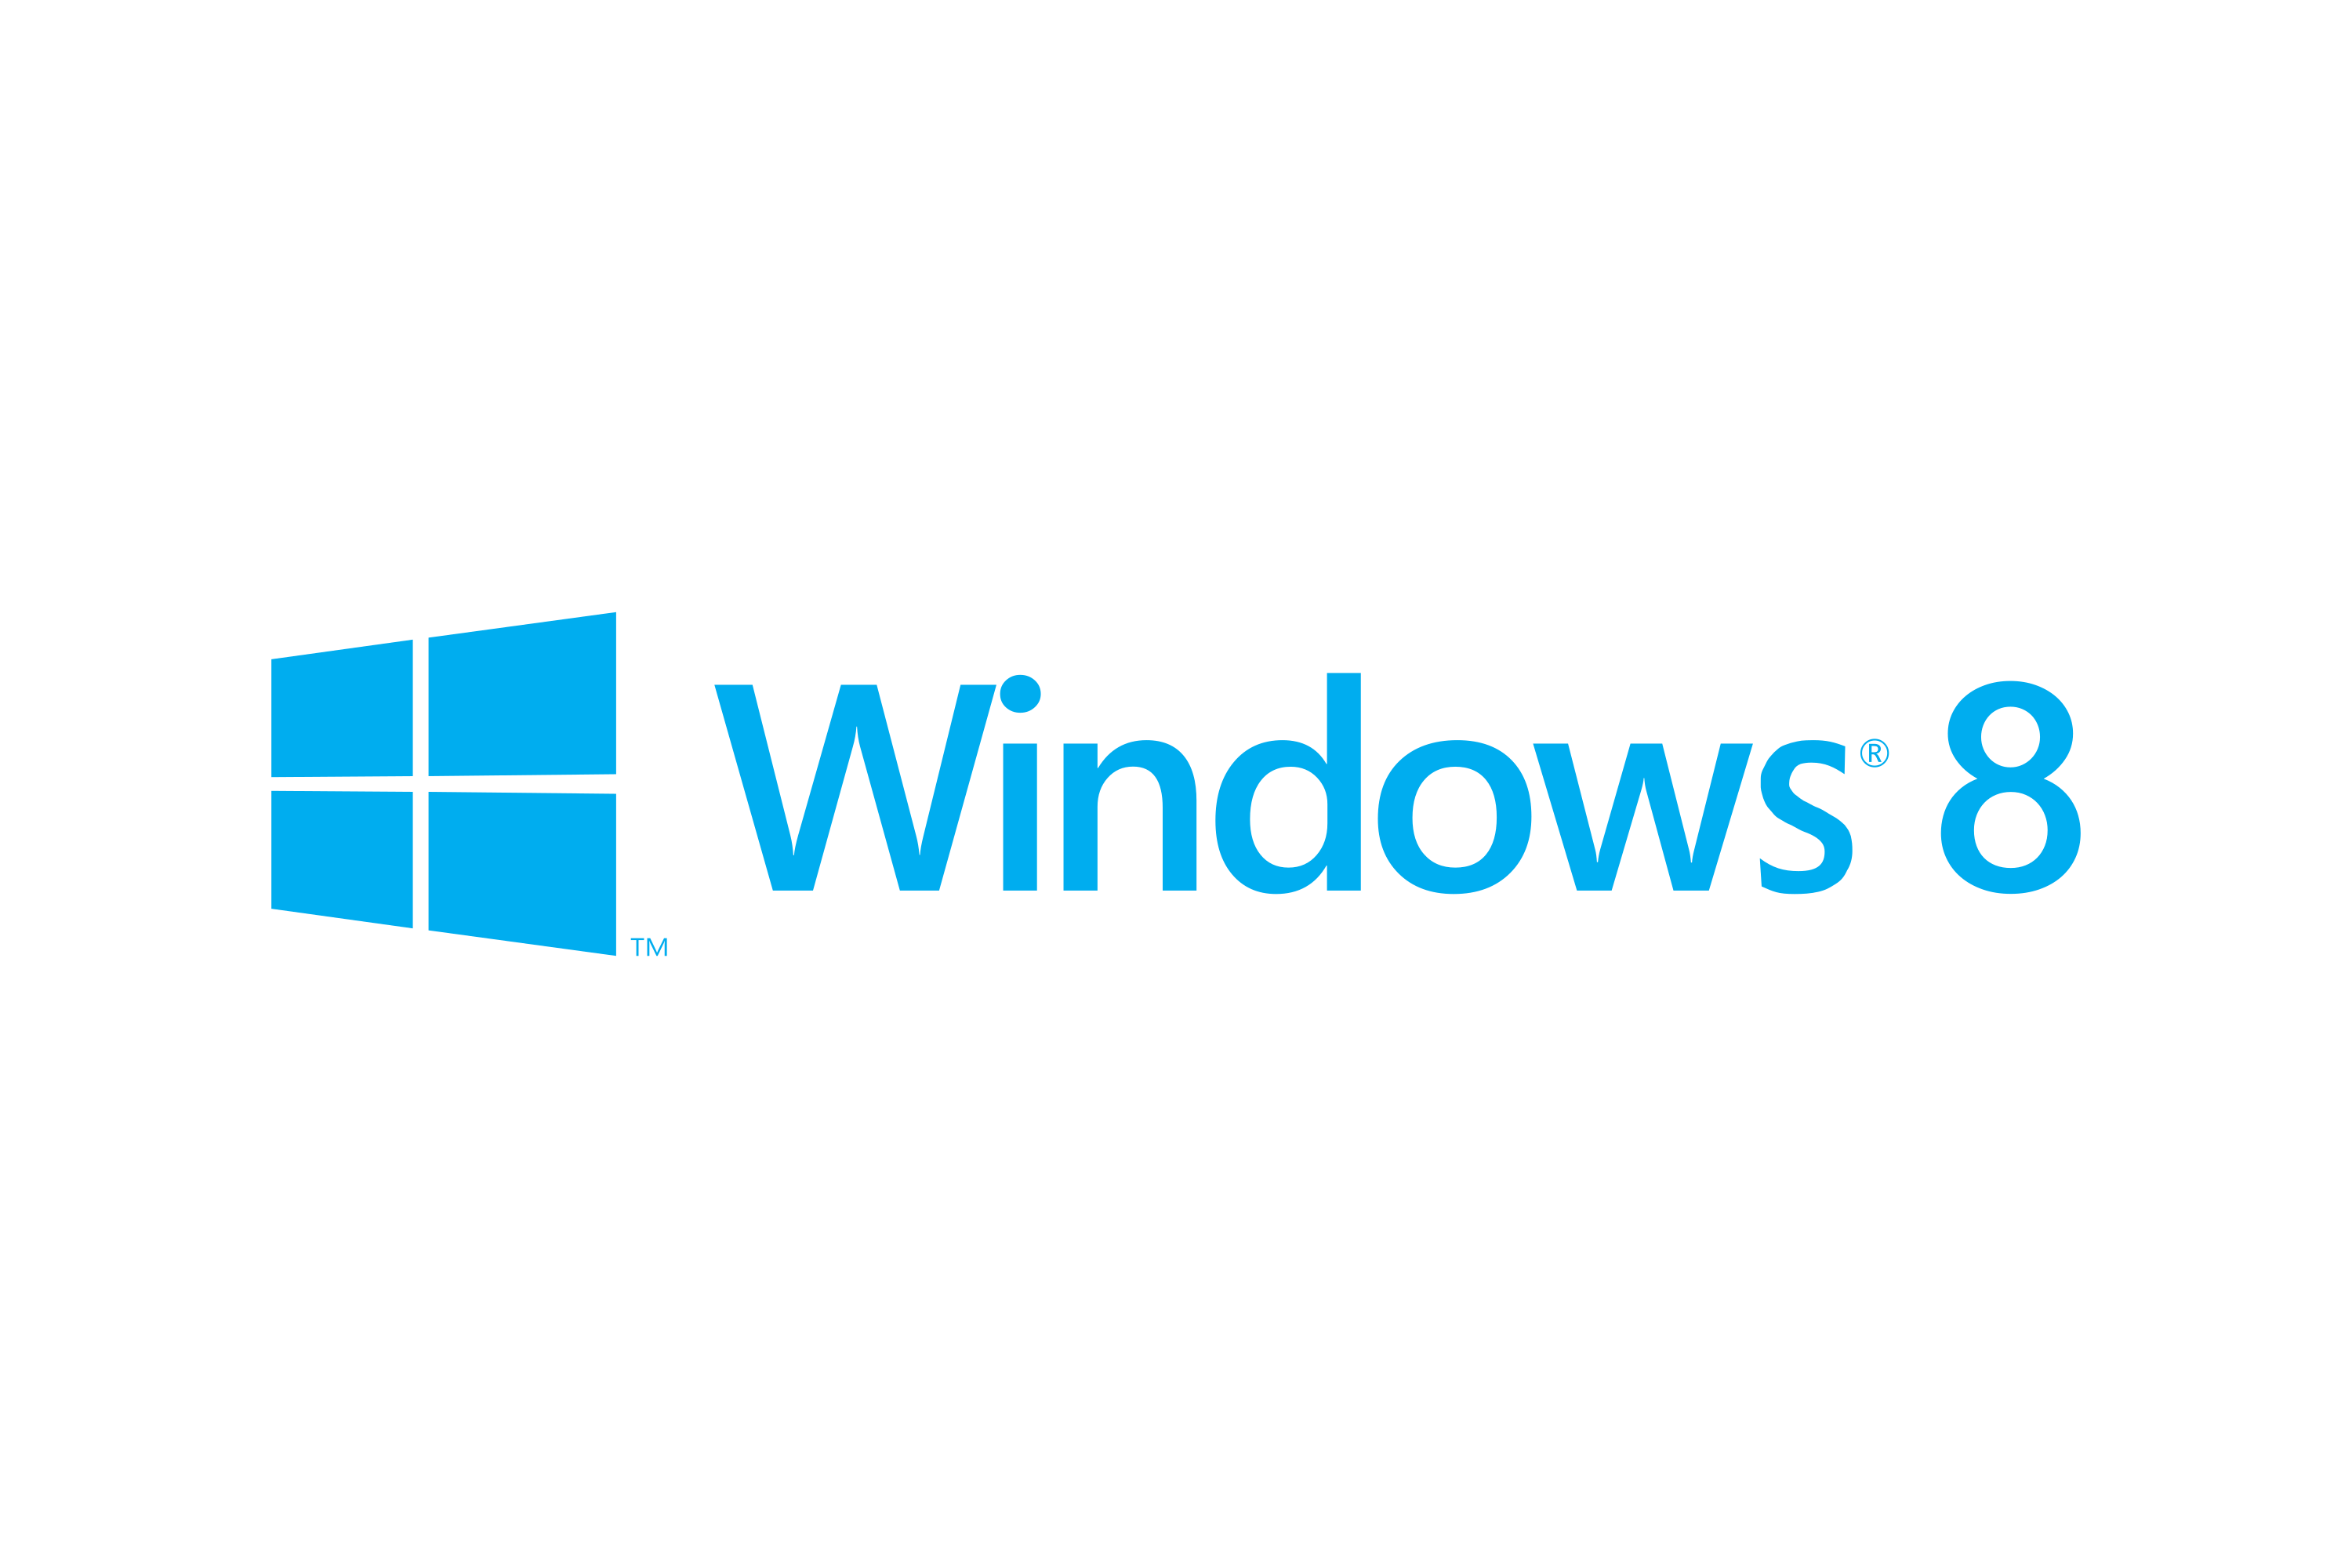 Download Windows 8 Logo in SVG Vector or PNG File Format - Logo.wine